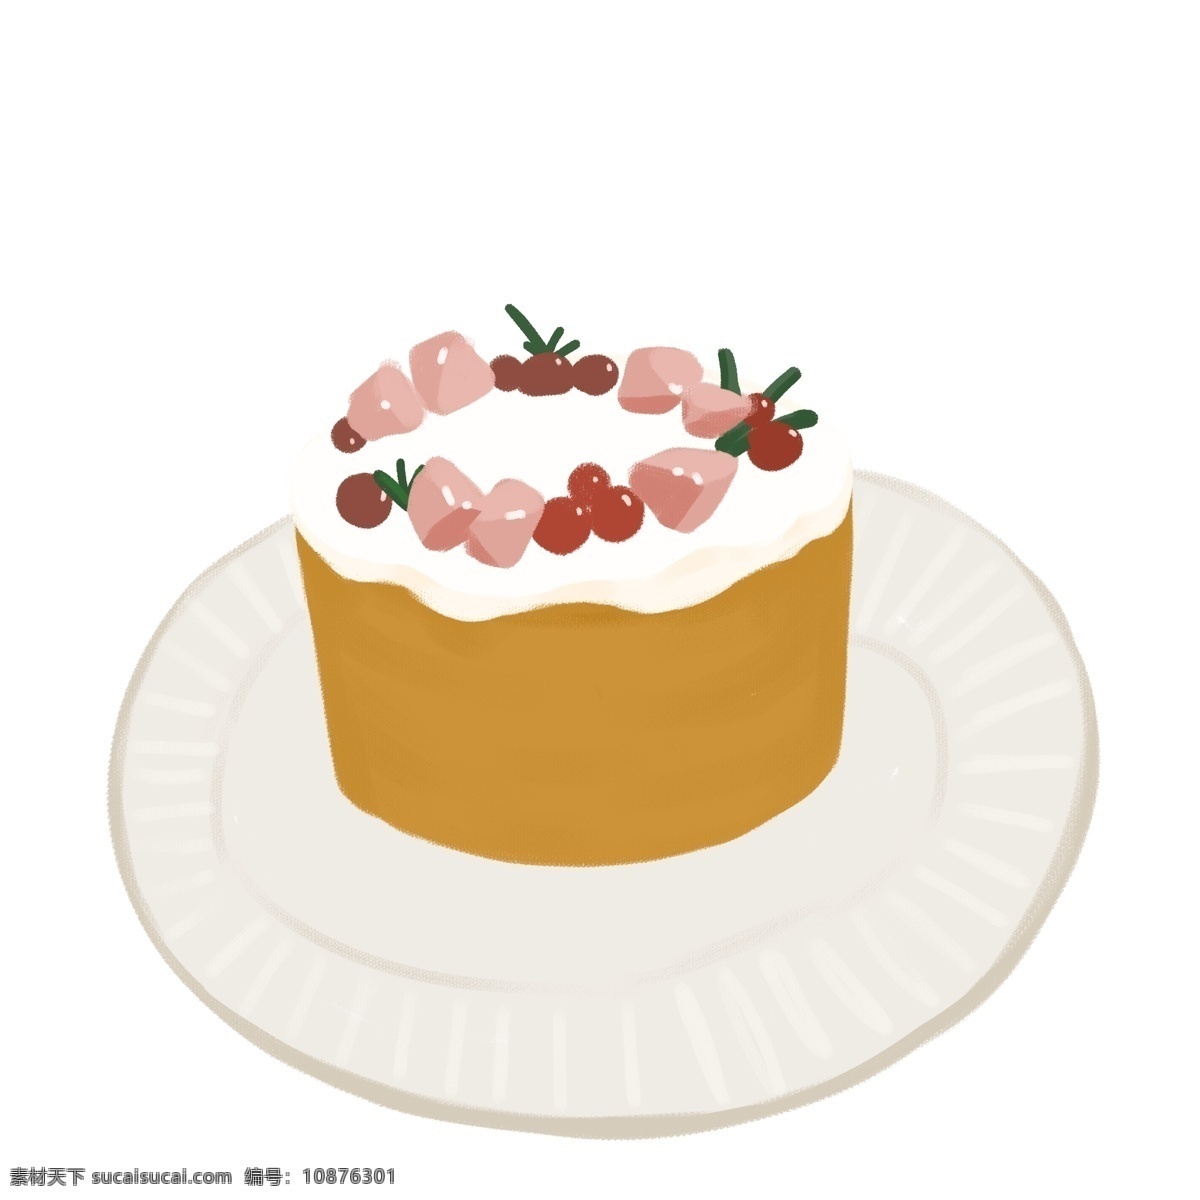 桃子 草莓 蛋糕 手绘 可爱 可爱蛋糕 桃子蛋糕 手绘插画 插画小蛋糕 手绘小蛋糕 奶油小蛋糕 小清新